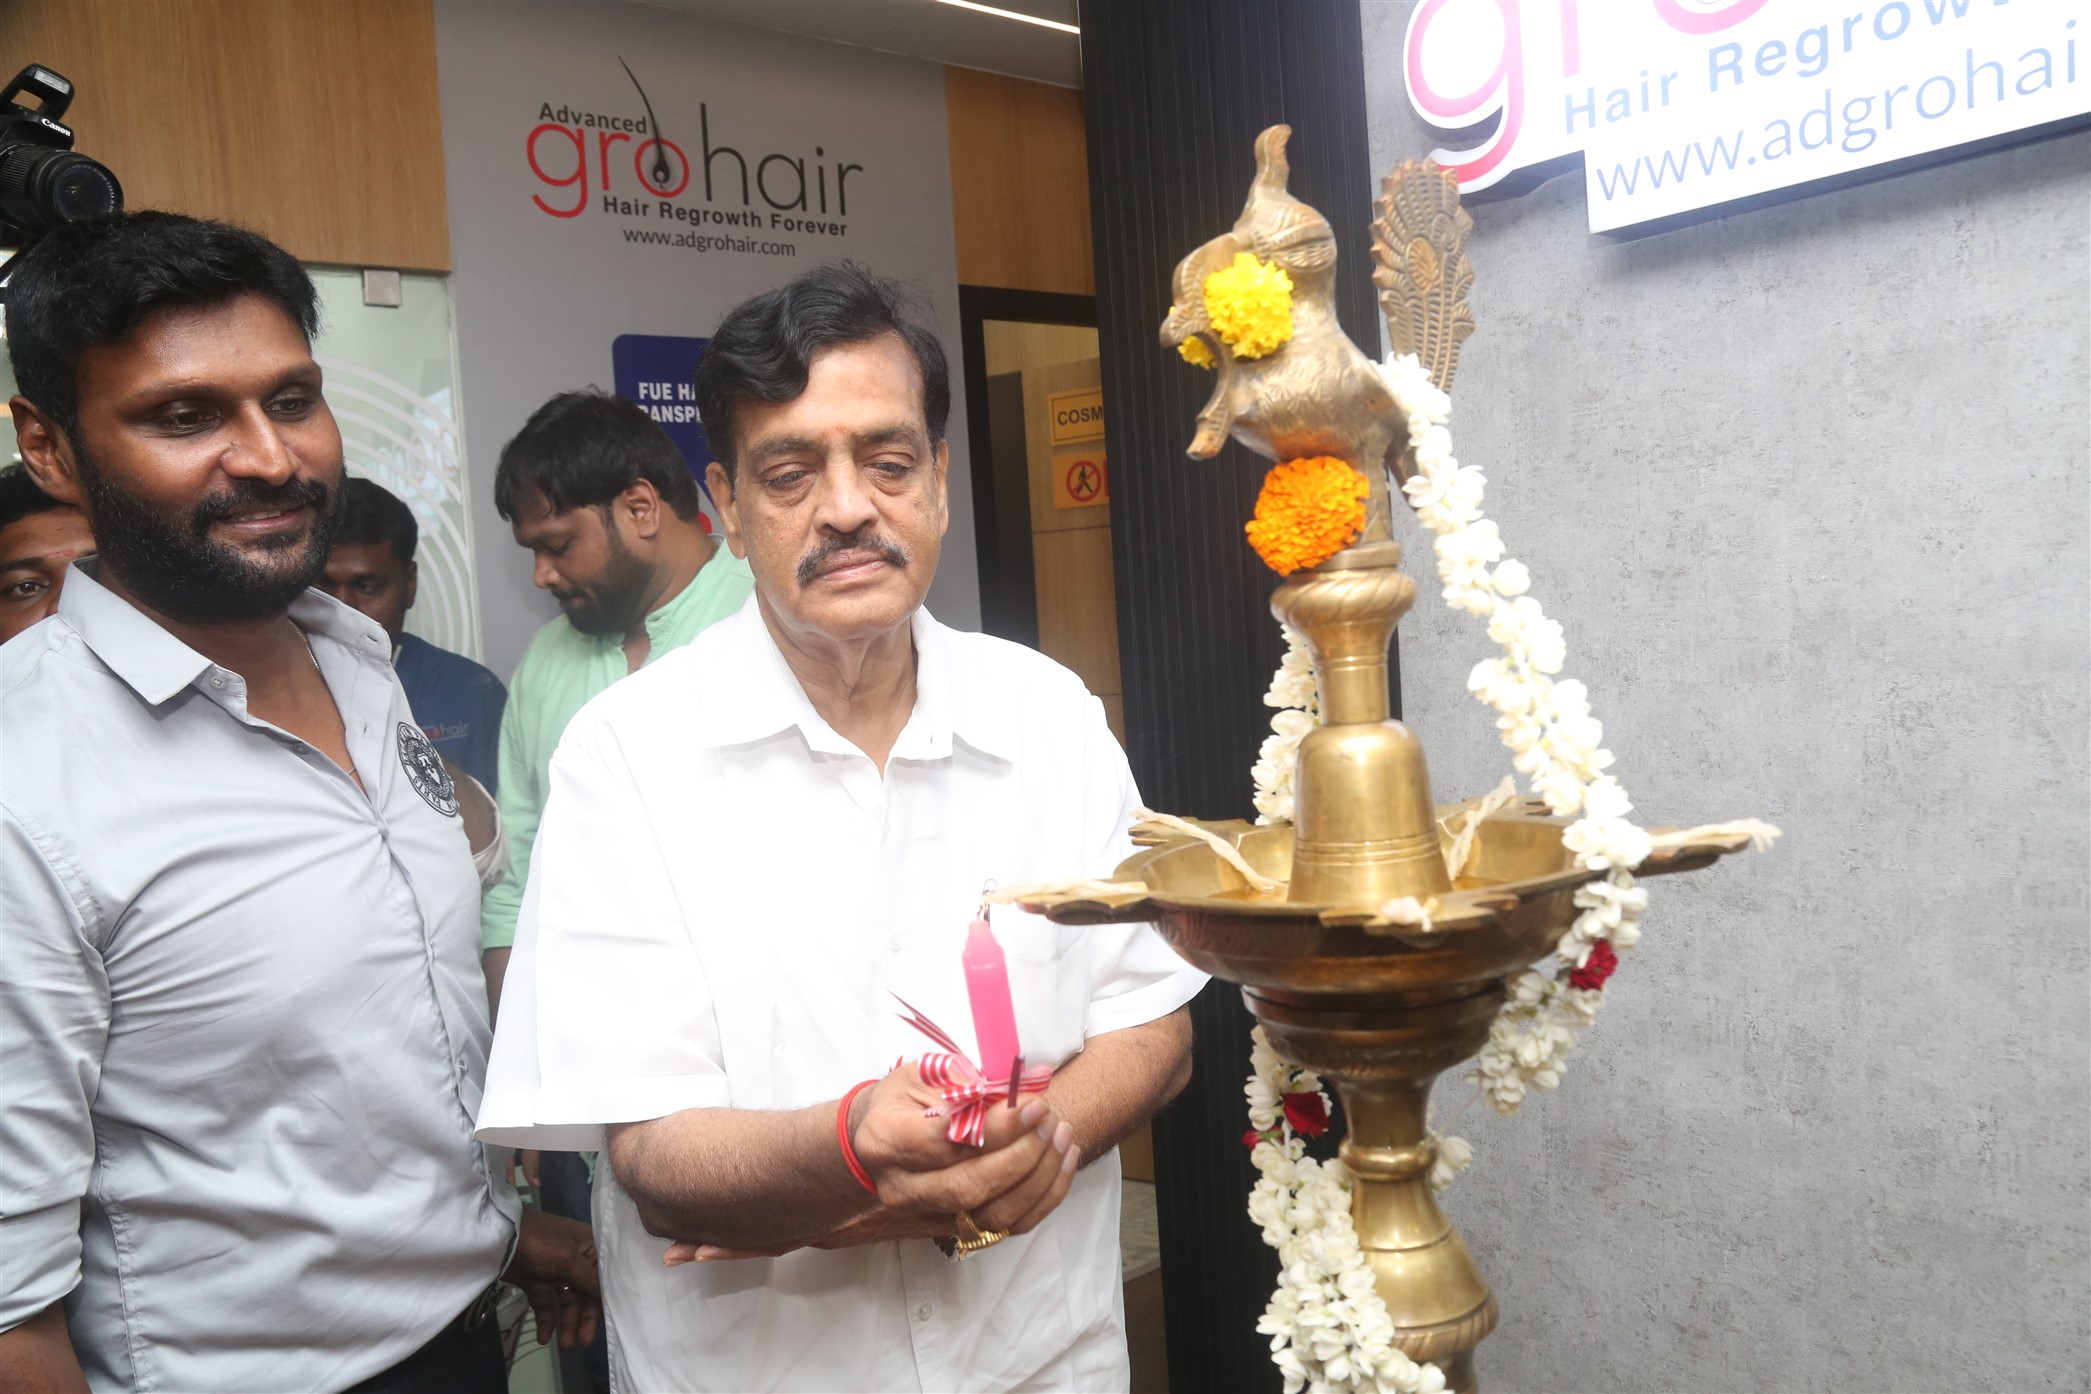 Advanced Gro Hair Clinic Fourth Branch at Anna Nagar inaugurated by Mr  Mohan MLA Anna Nagar  Chennai City News